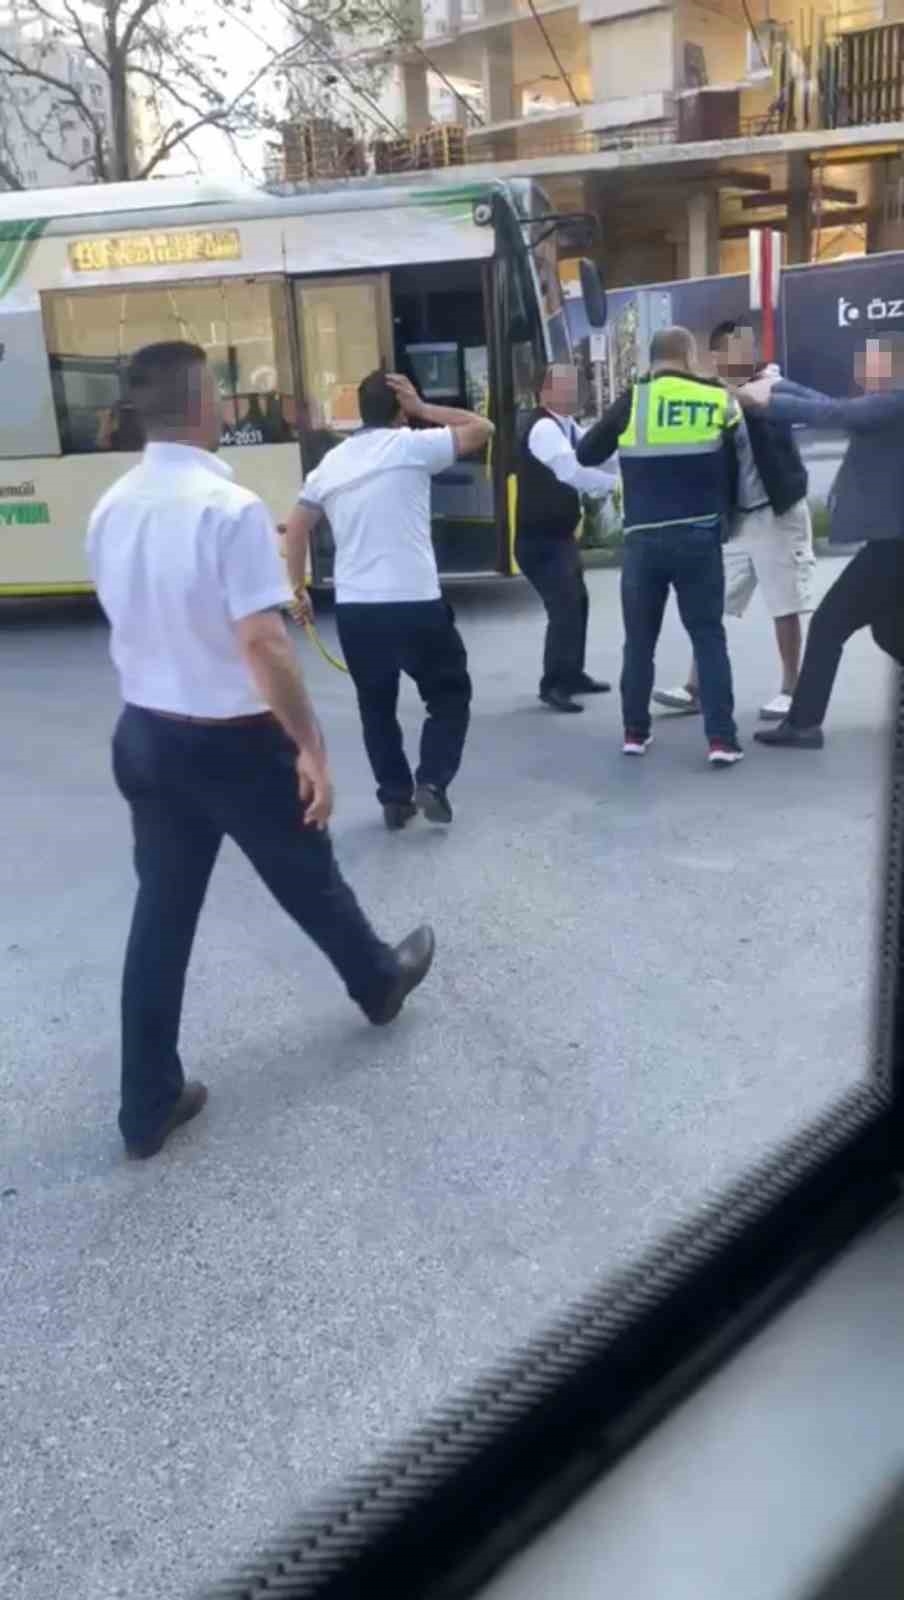 Maltepe’de İETT şoförünün yolcuya demir sopayla saldırdığı anlar kamerada
